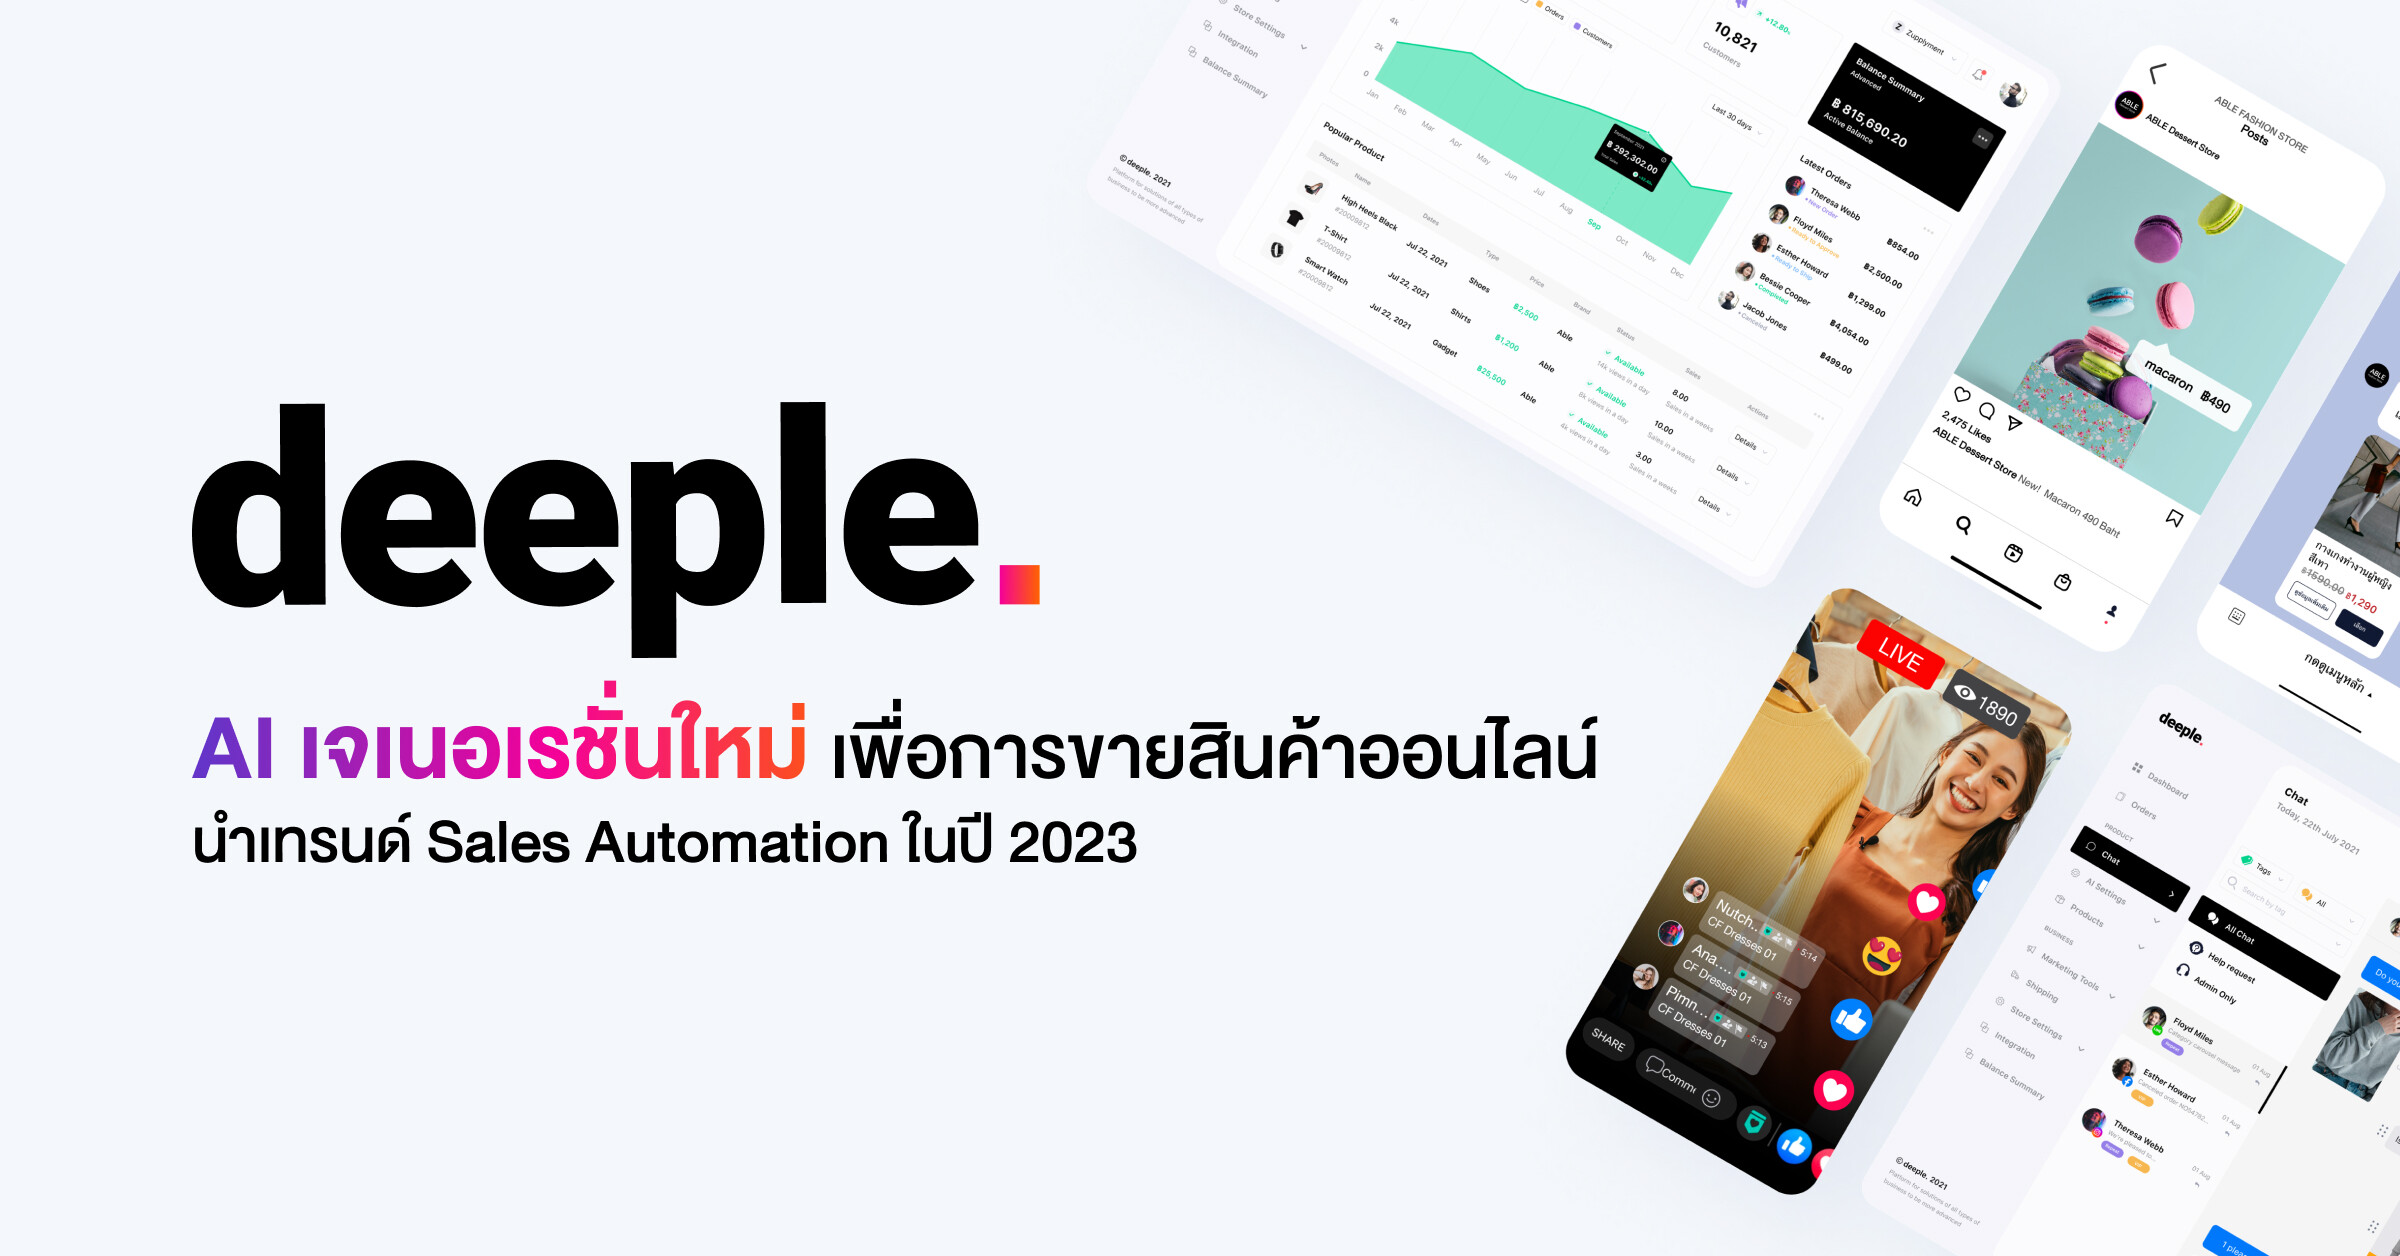 "deeple" (ดีเปิ้ล) เปิดตัว AI เจเนอเรชั่นใหม่เพื่อการขายสินค้าออนไลน์ นำเทรนด์ Sales Automation ในไทยปี 2023